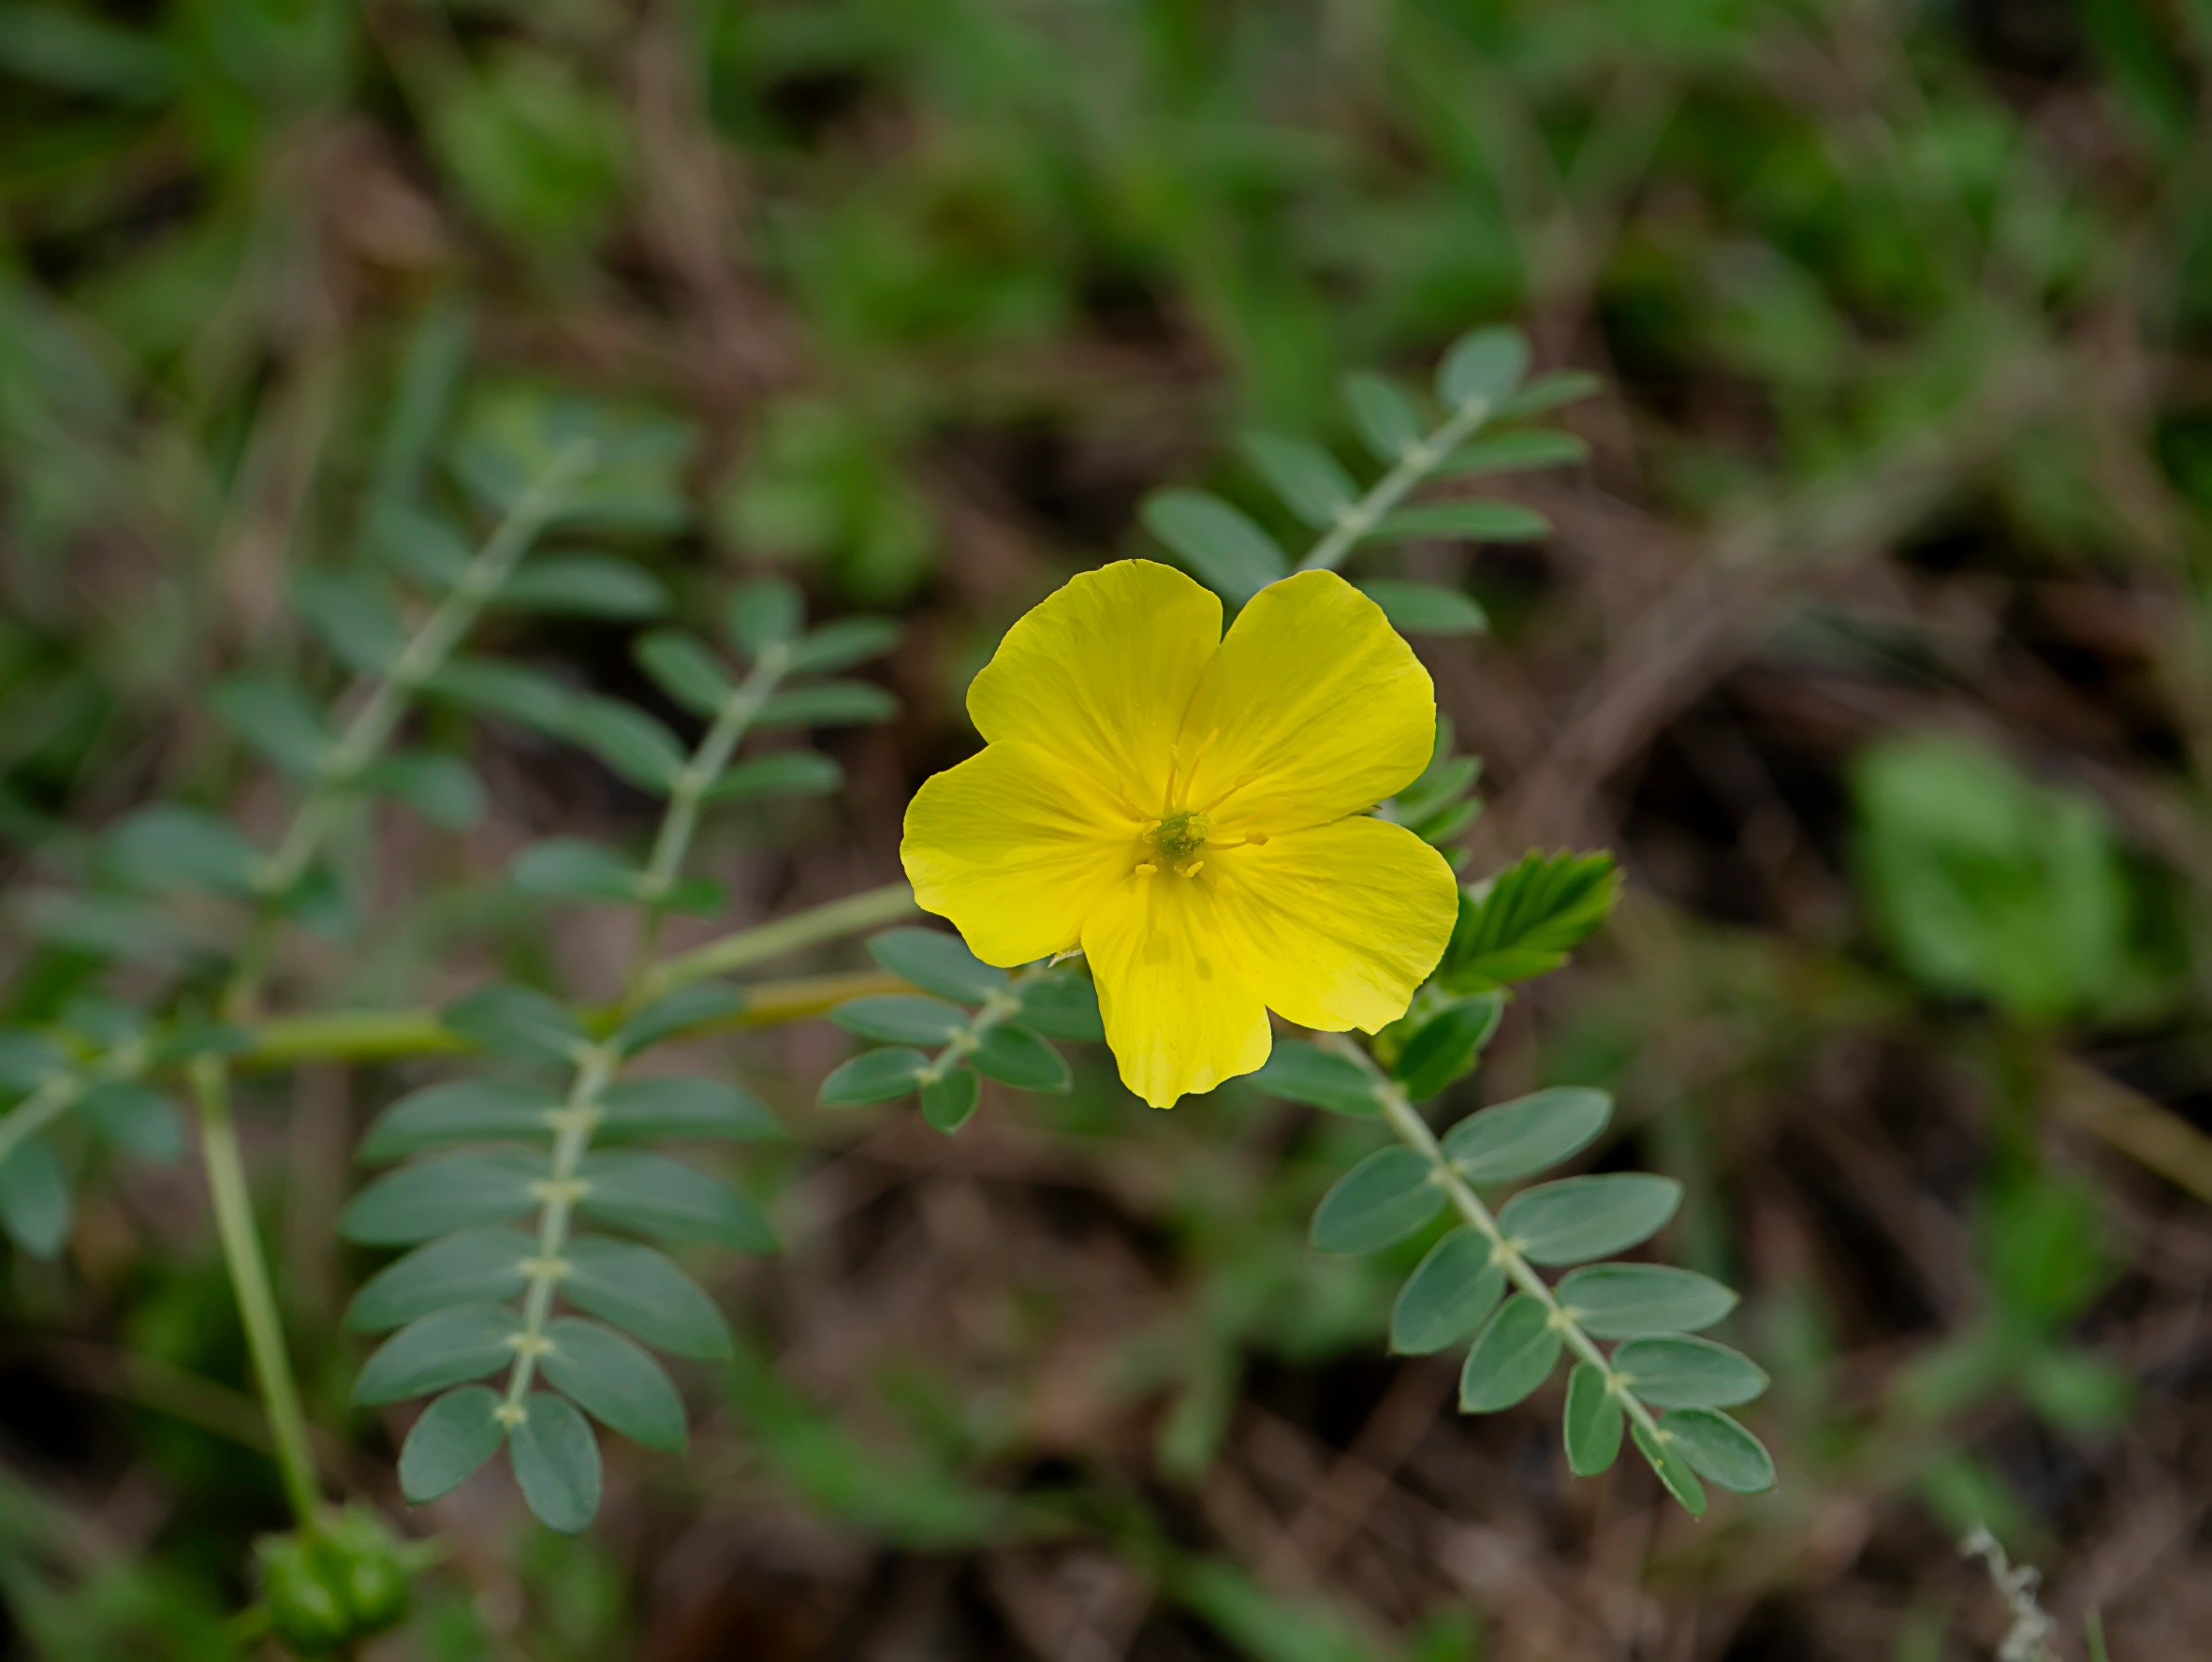 žlutý květ kotvičníku zemního